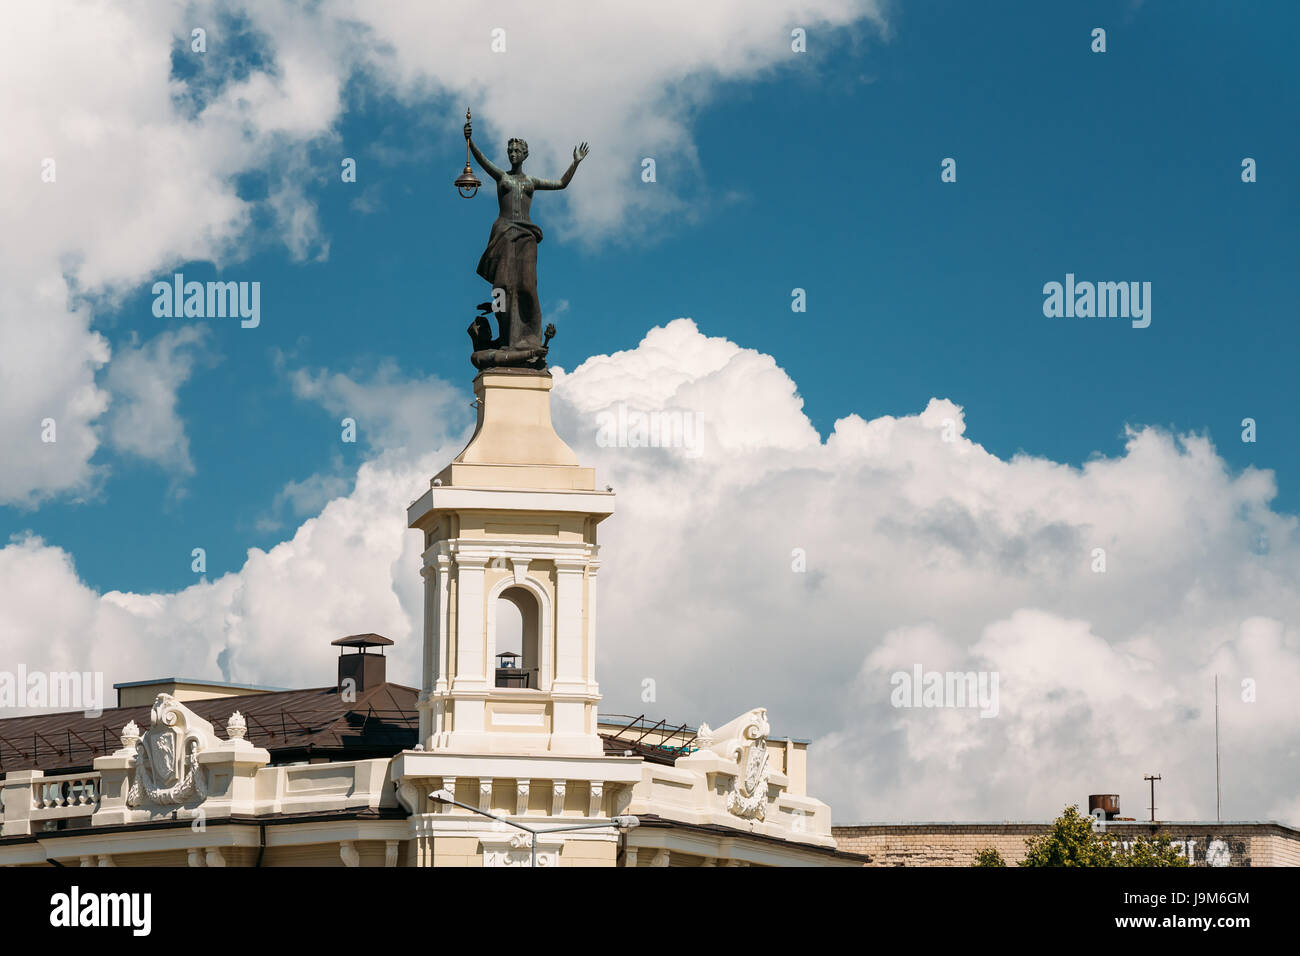 Vilnius, Lituania - 5 Luglio 2016: Statua di una donna con una lanterna nelle sue mani sul tetto dell'energia e il Museo della Tecnologia contro un soleggiato blu Foto Stock